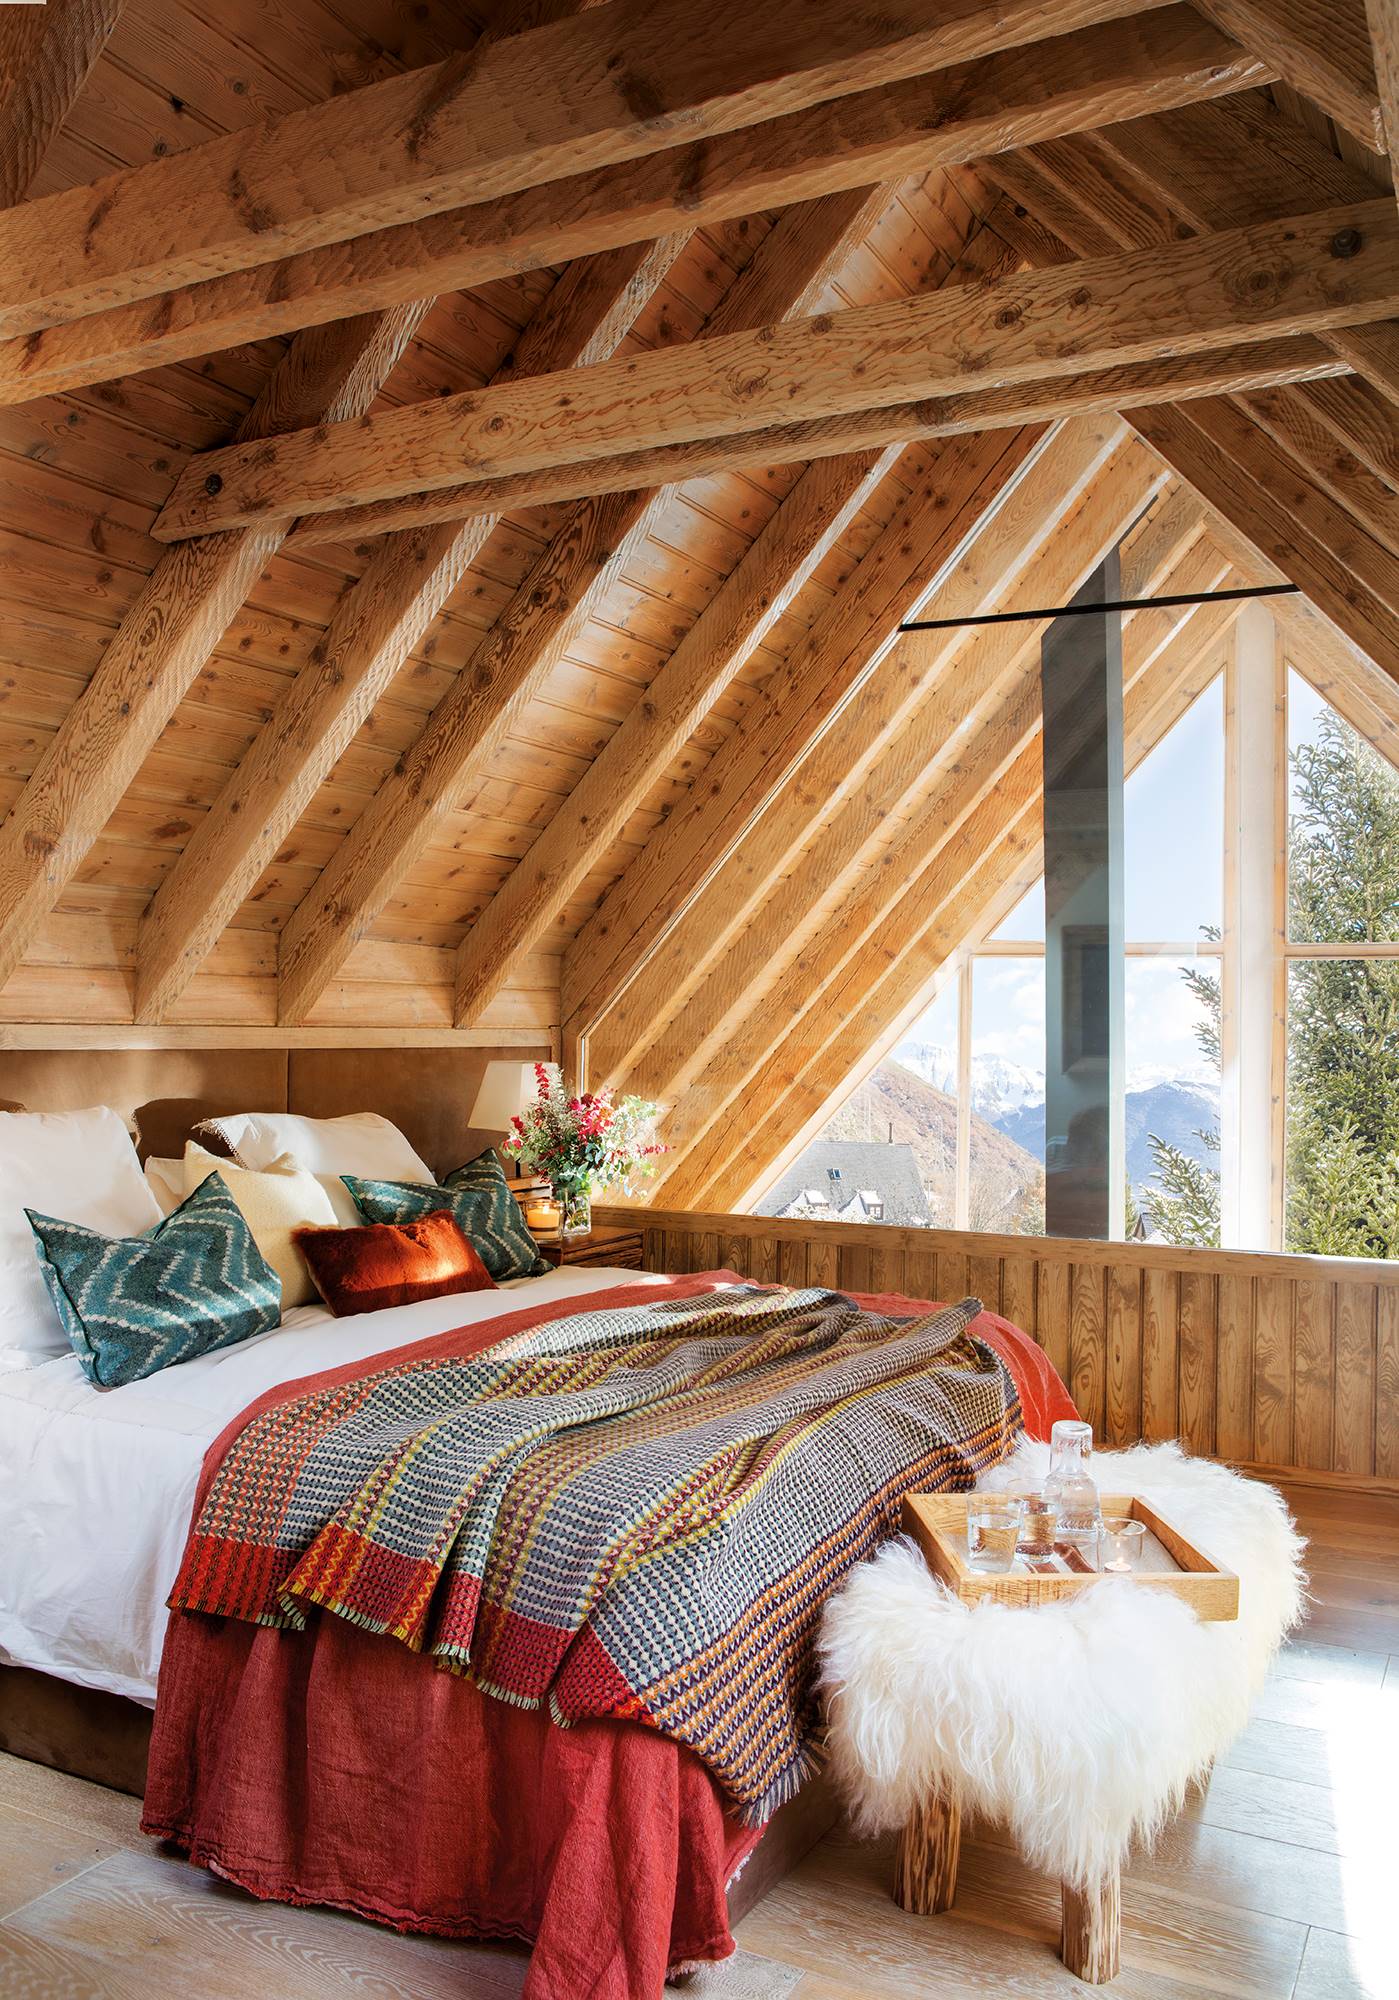 Dormitorio de invierno revestido en madera con vigas y banco de pelo.